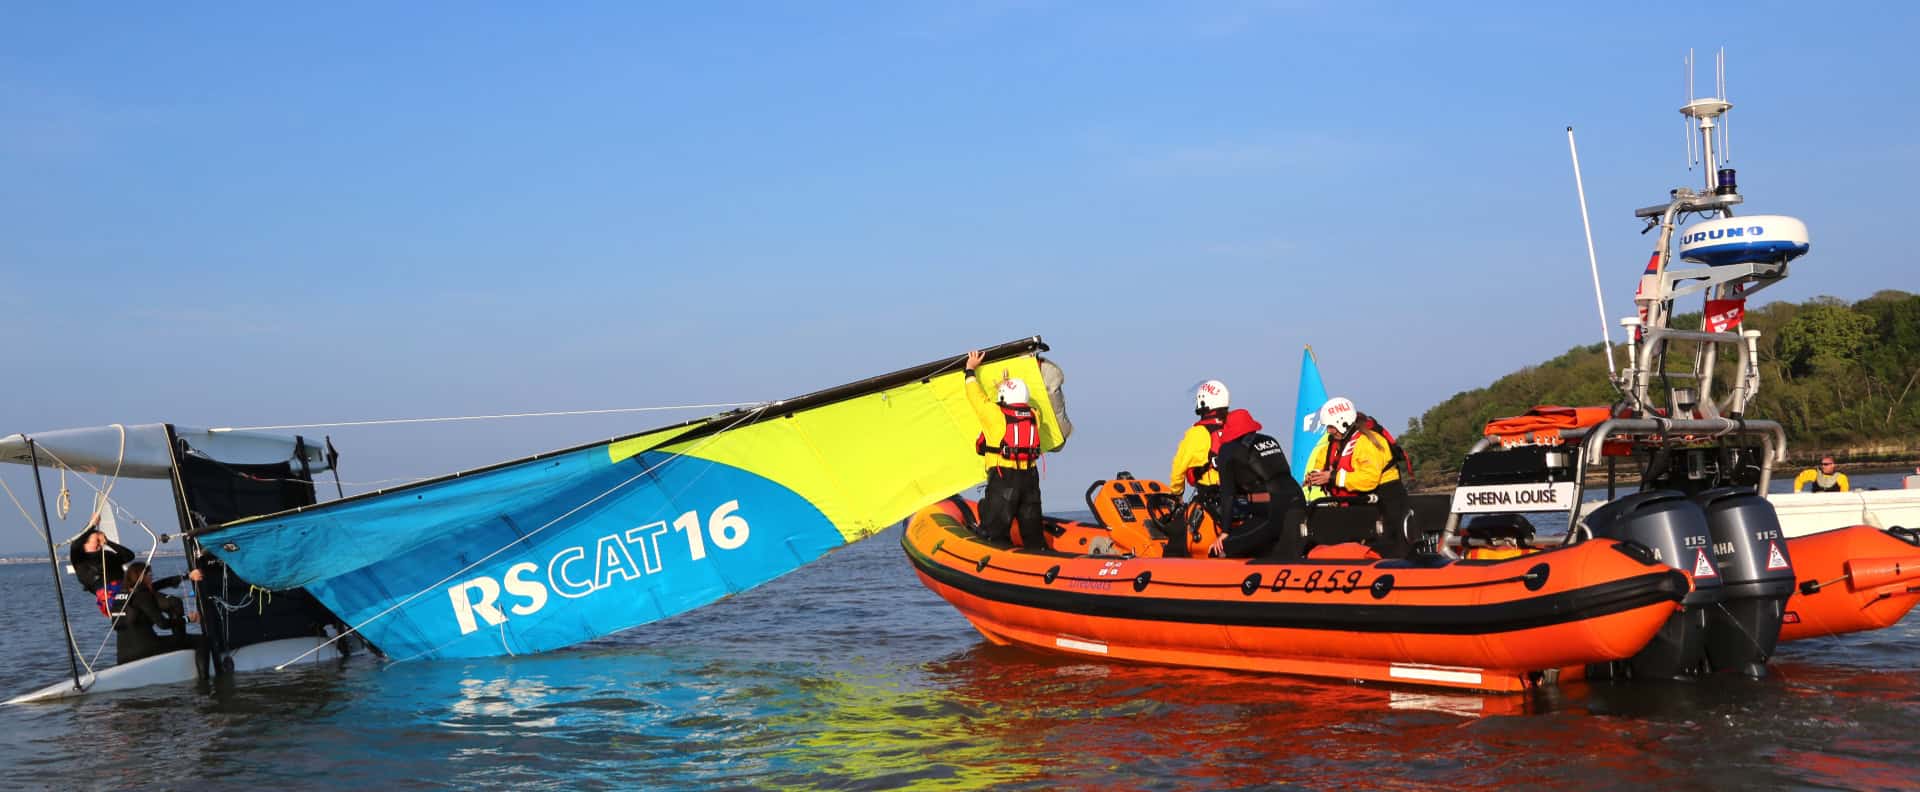 RNLI volunteers in rib rescuing people on a catamaran - UKSA